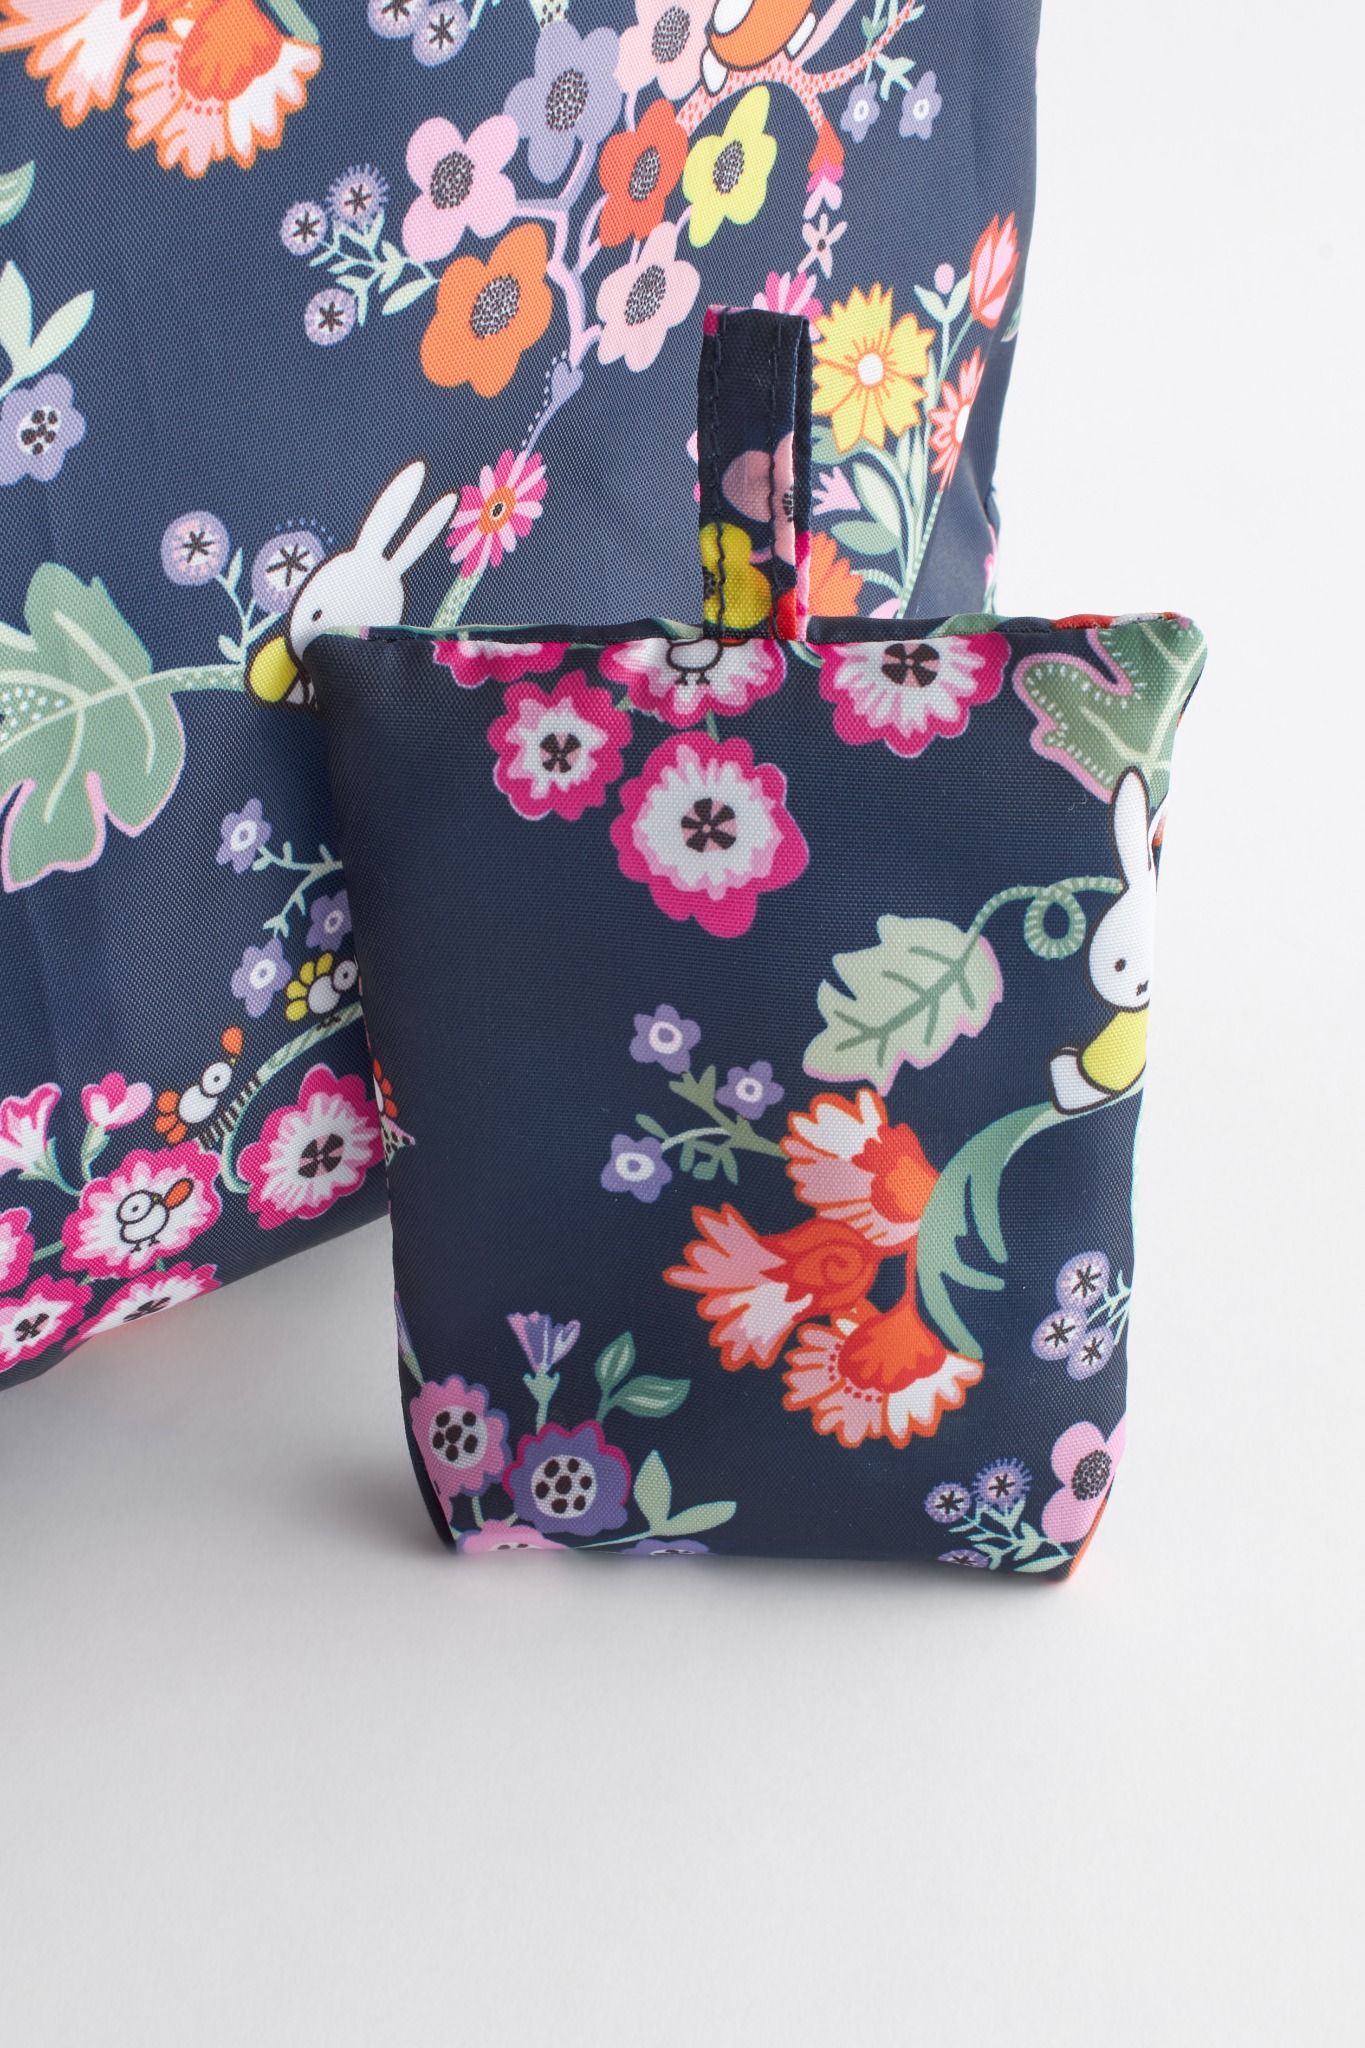  Túi đeo vai xếp gọn/Foldaway Shopper - Miffy Botanical - Navy 